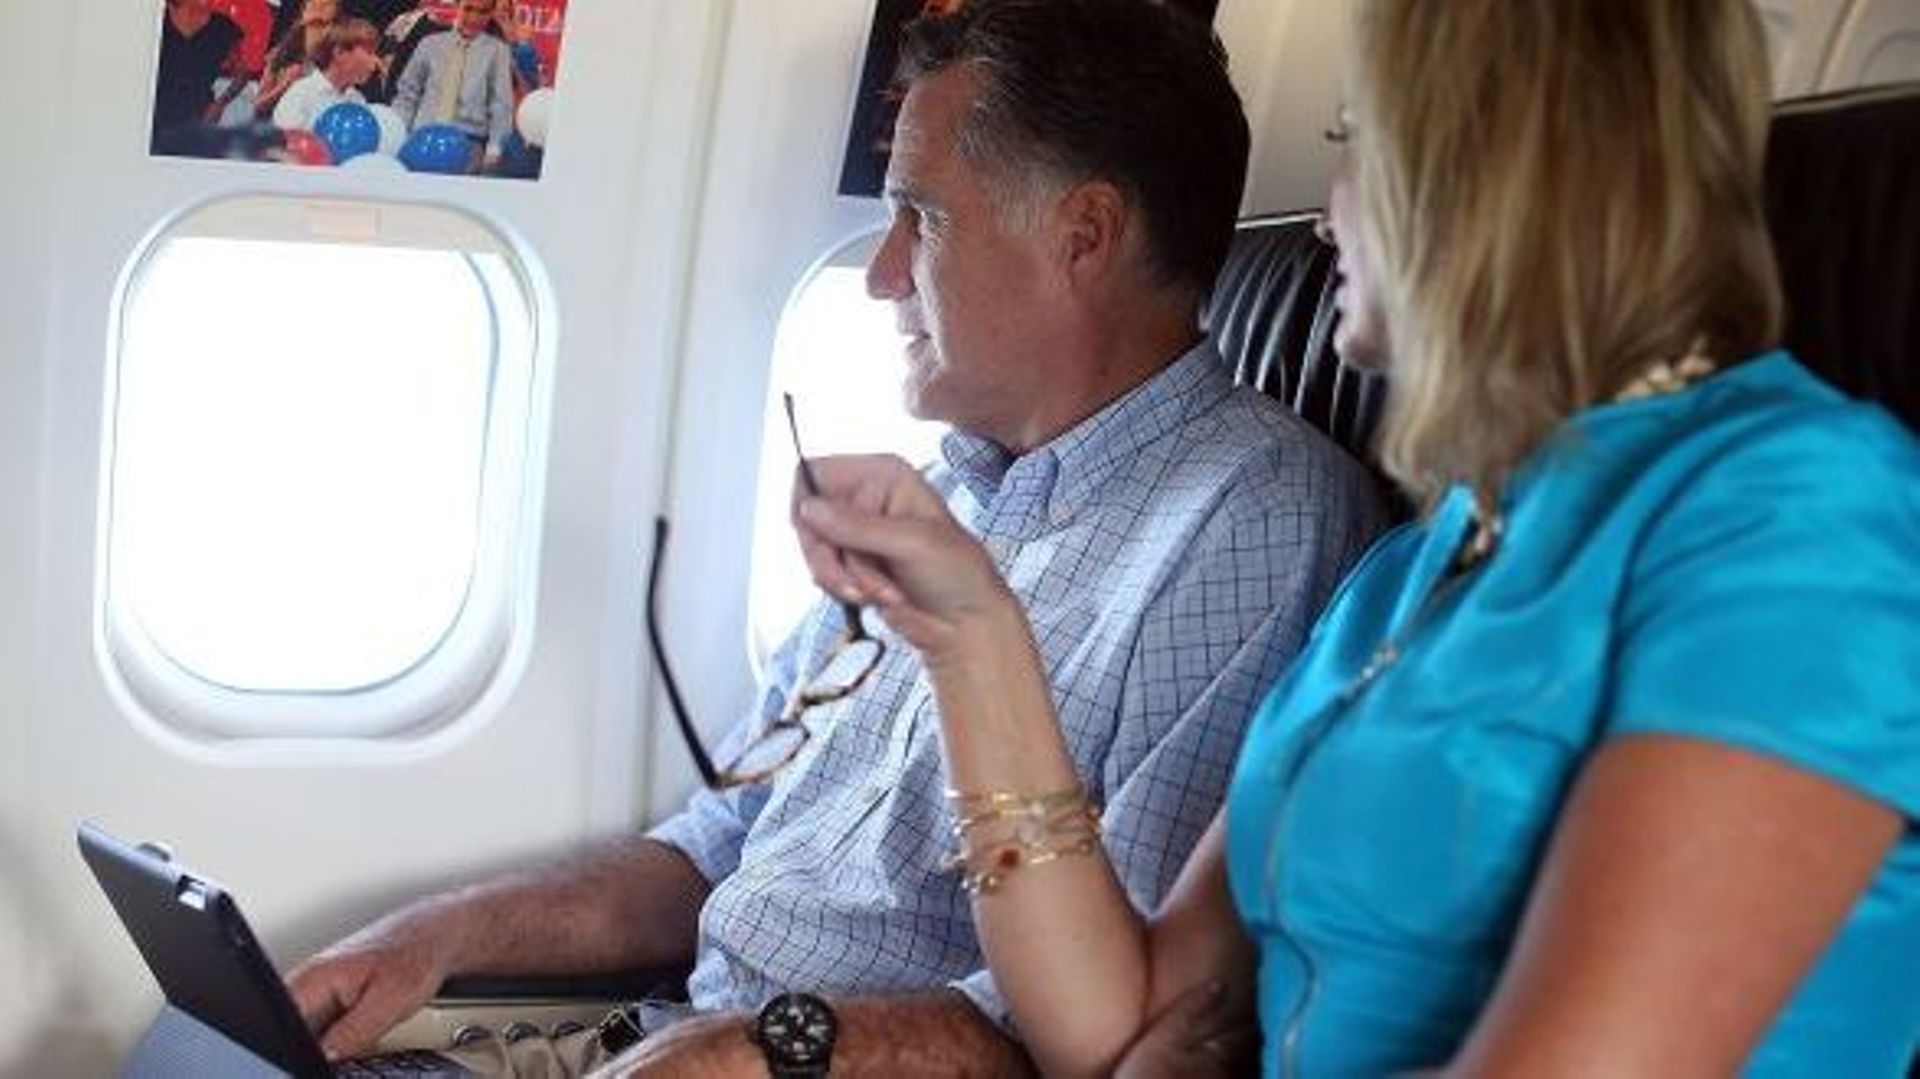 Mais pourquoi ne peut-on pas ouvrir les hublots d'un avion? Mitt Romney et son épouse